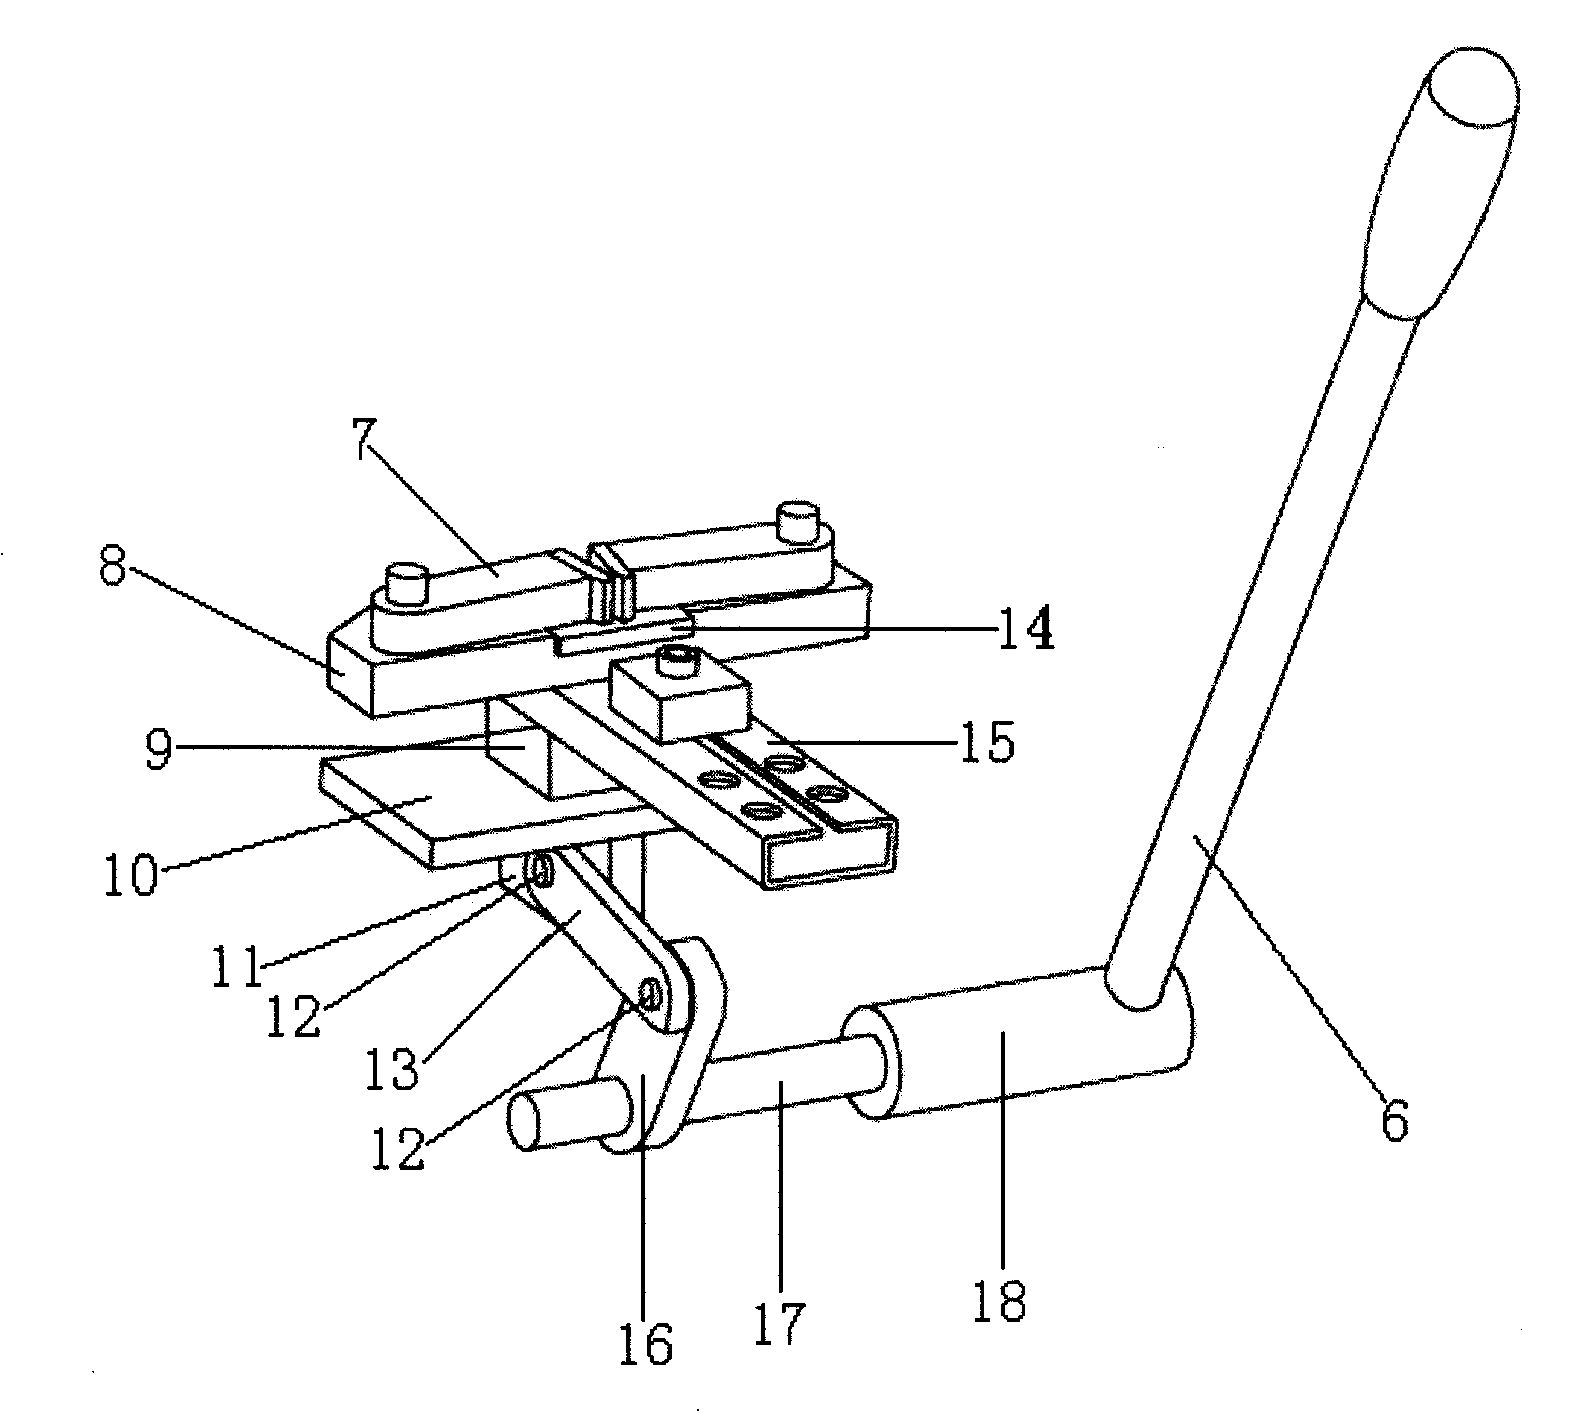 Manual simple tensile machine